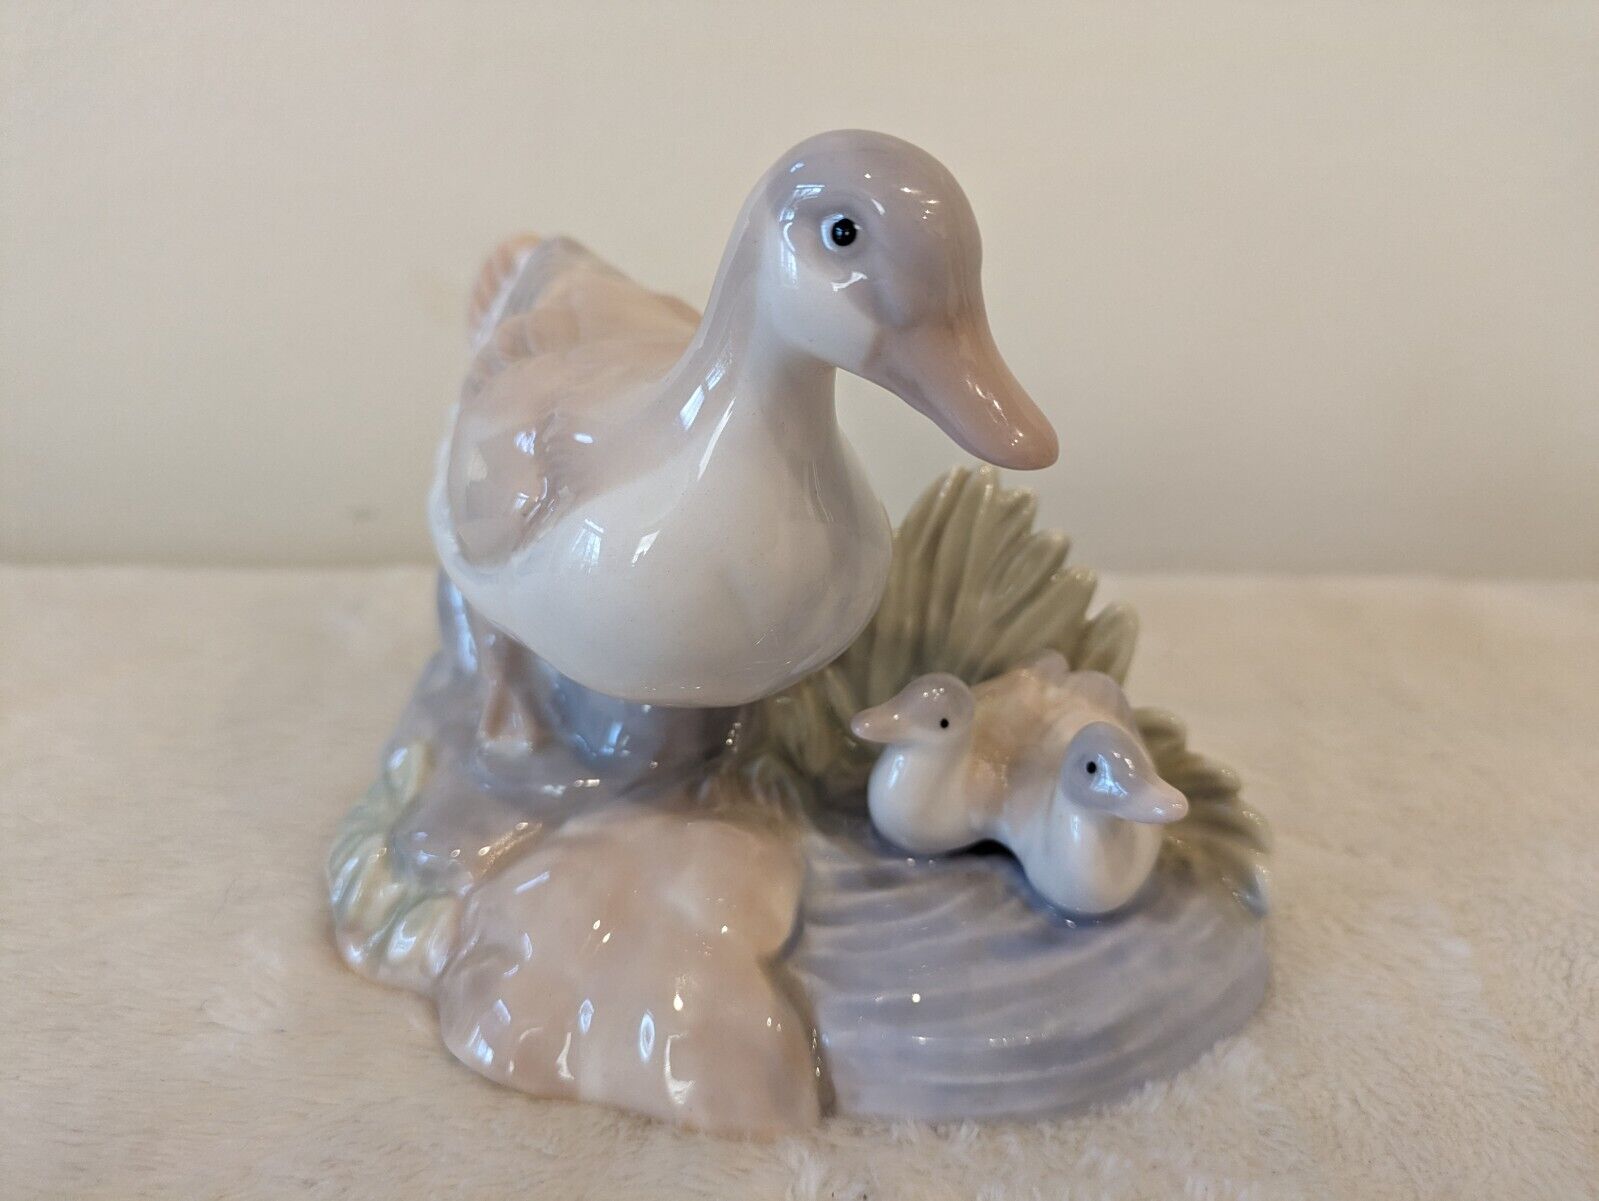 Vintage Porcelain Duck & Ducklings Figurine, Light/Pastel Colors of Blue & Tan